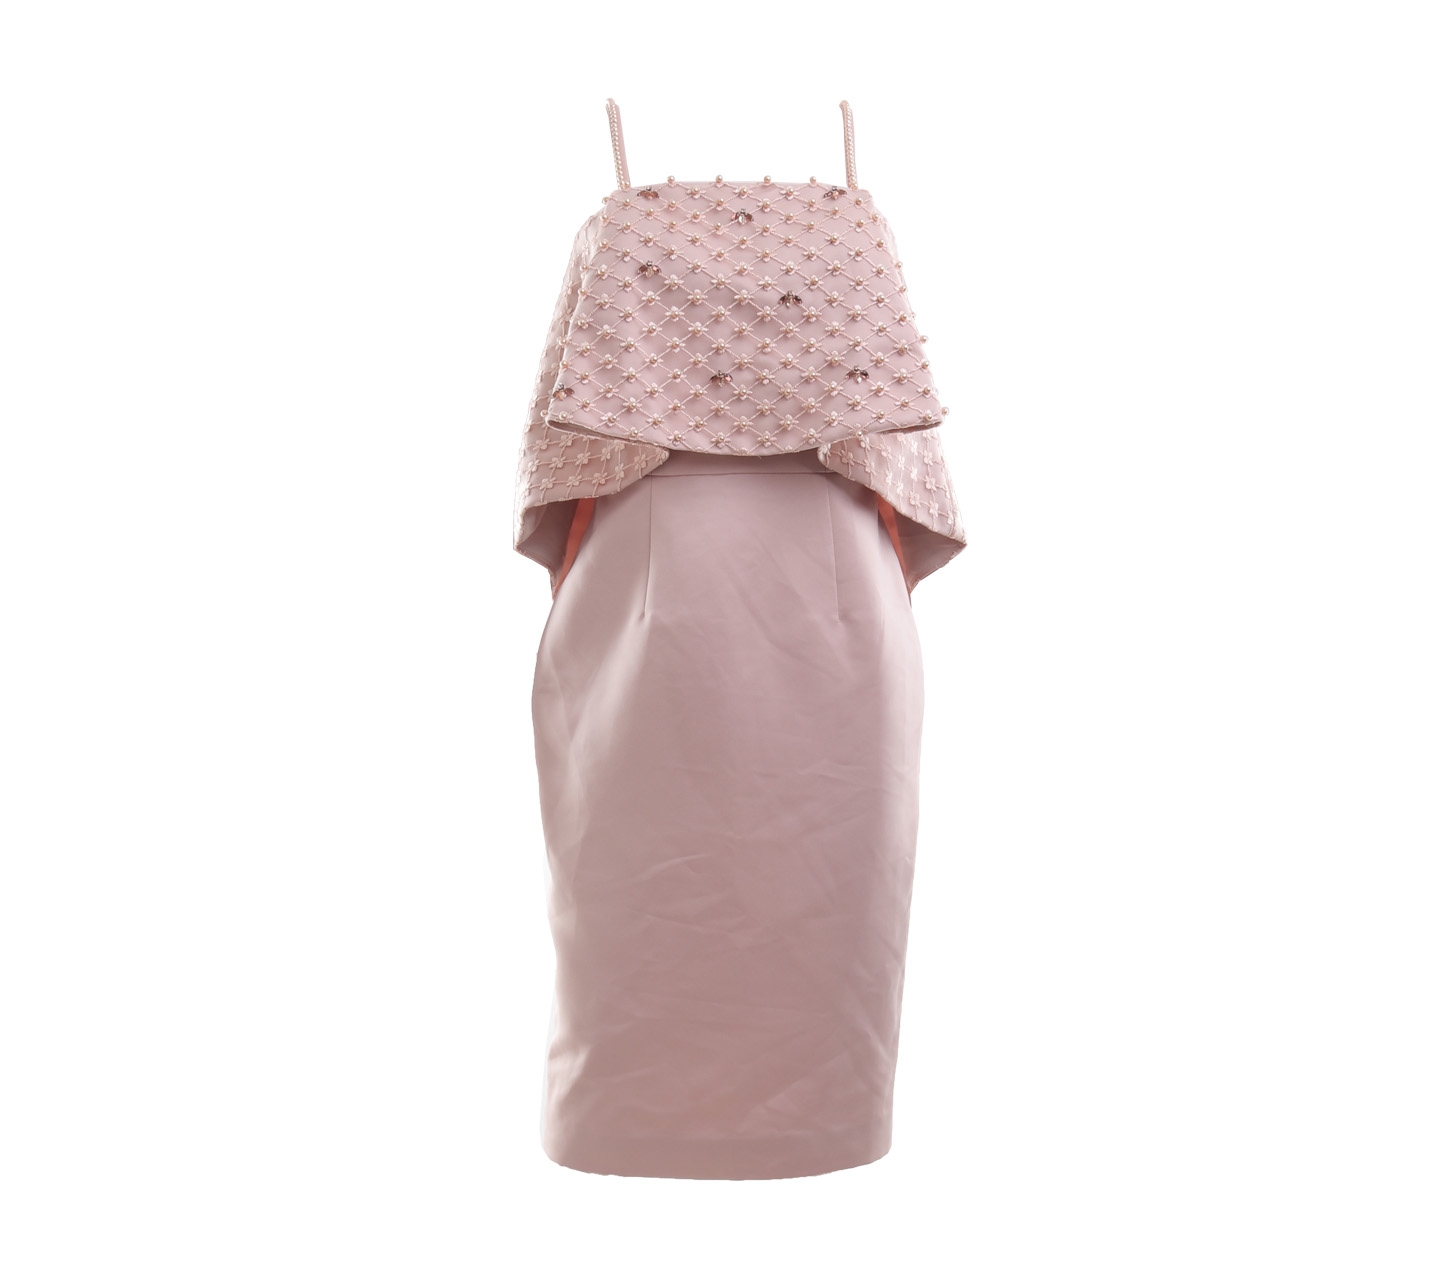 Diora Official Peach Pearls Mini Dress